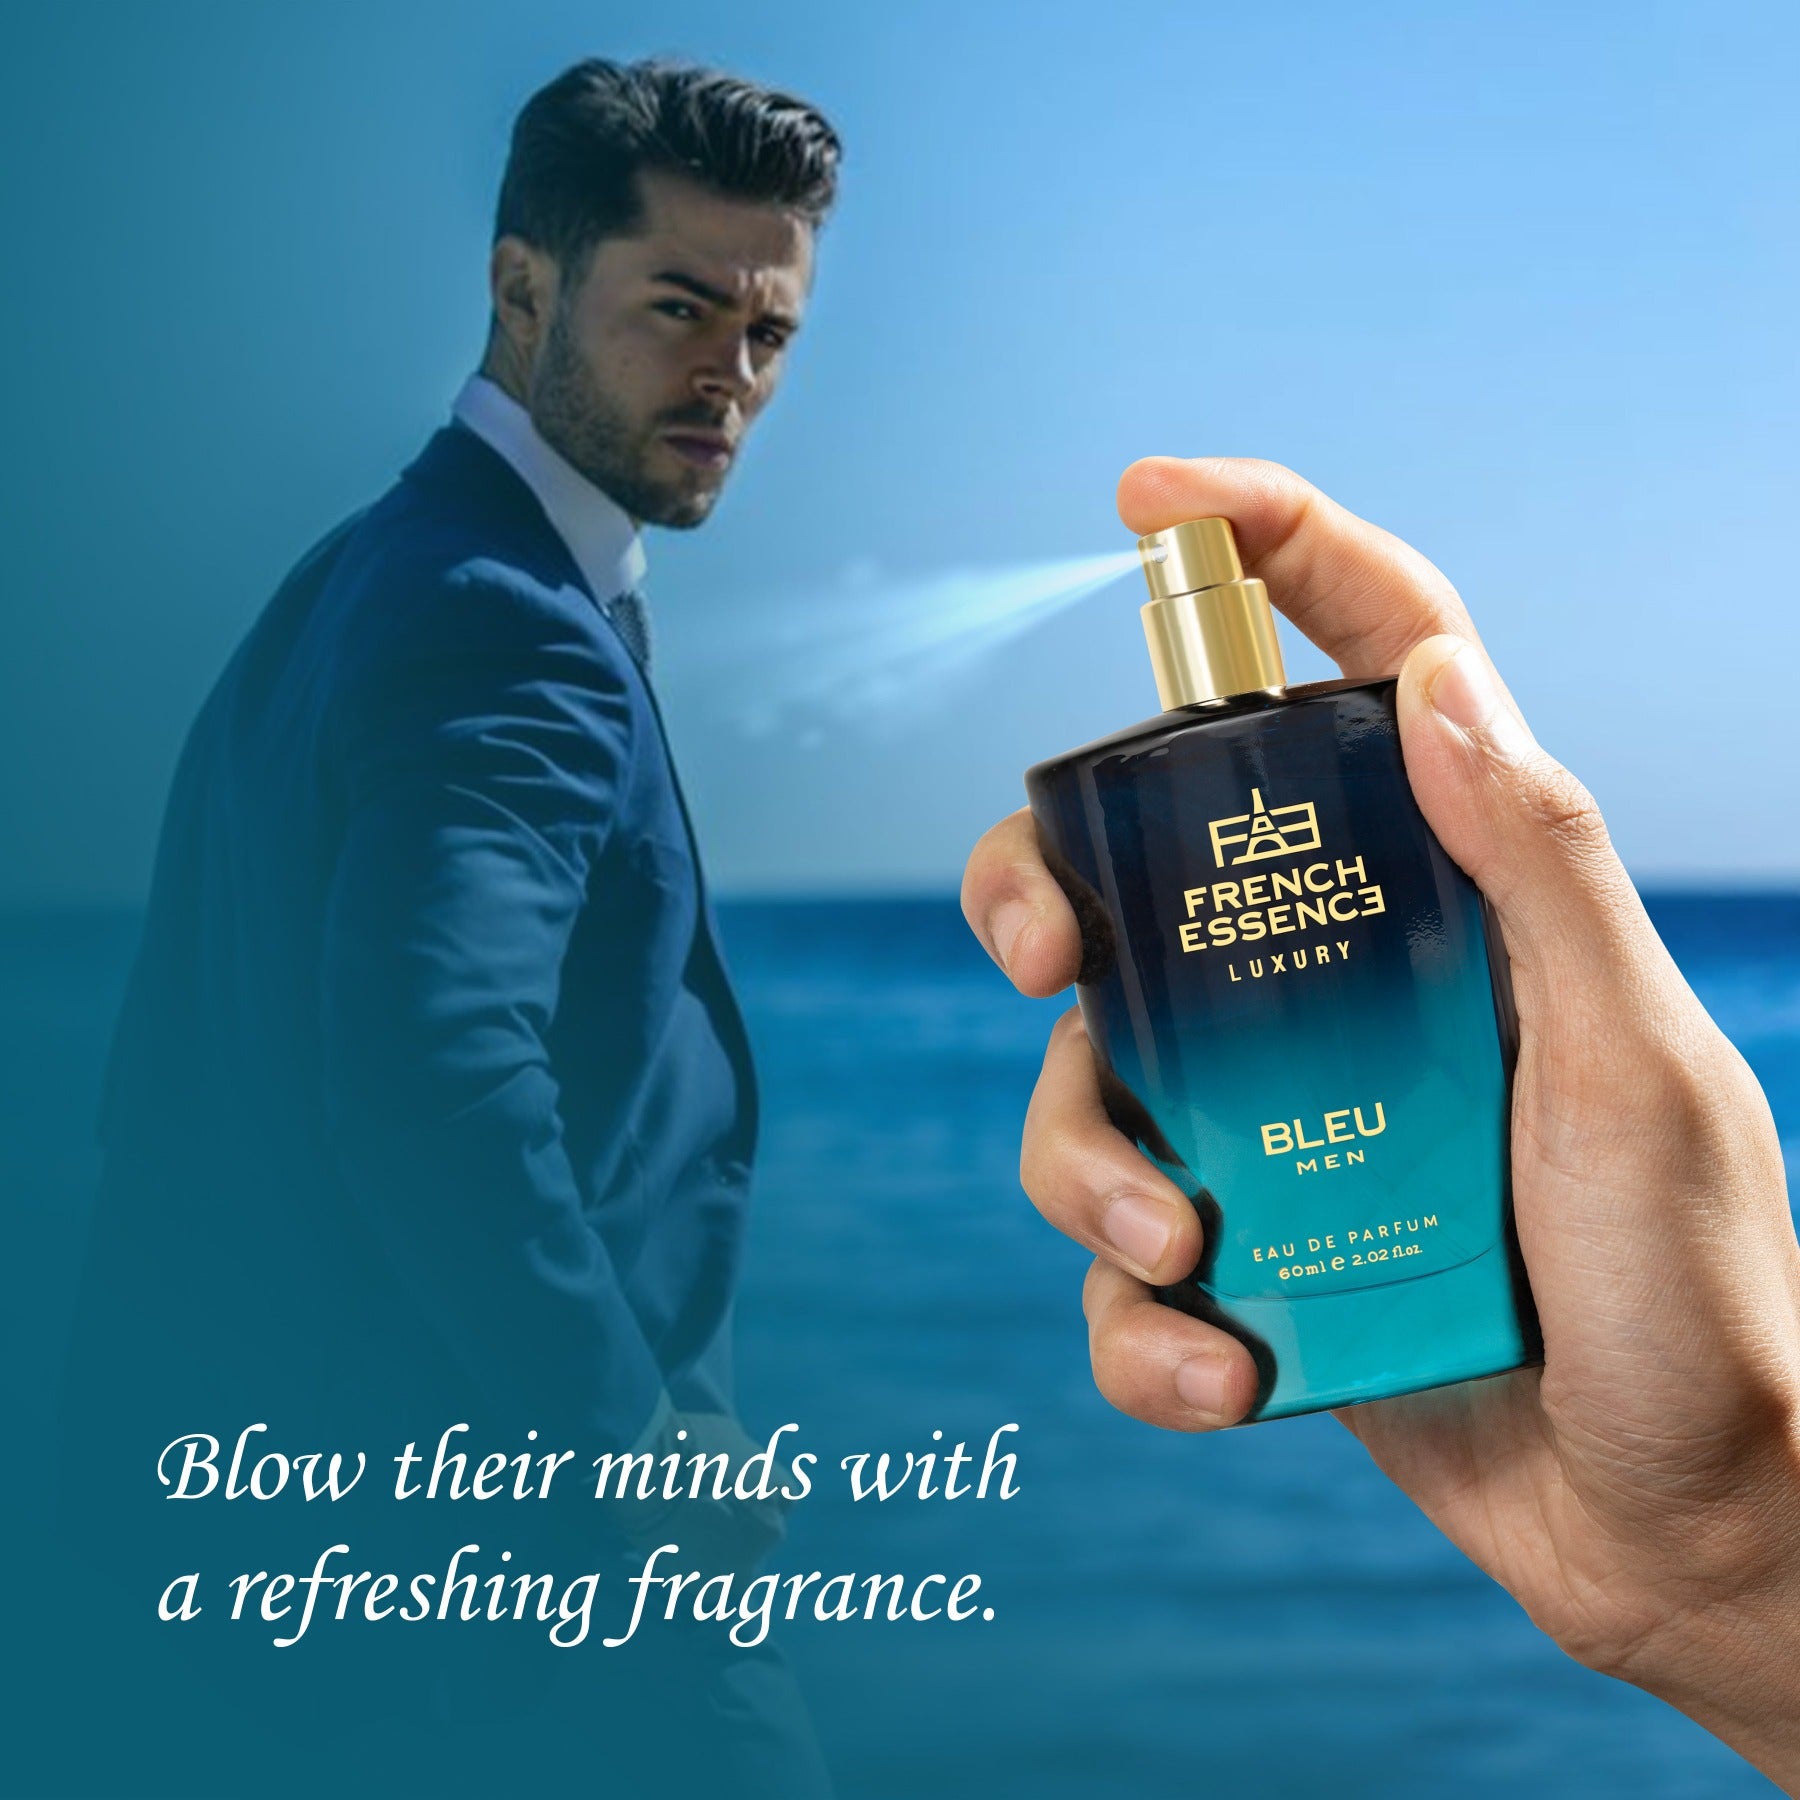 Buy Branded Perfumes For Men  French Essence Bleu Perfume for Men